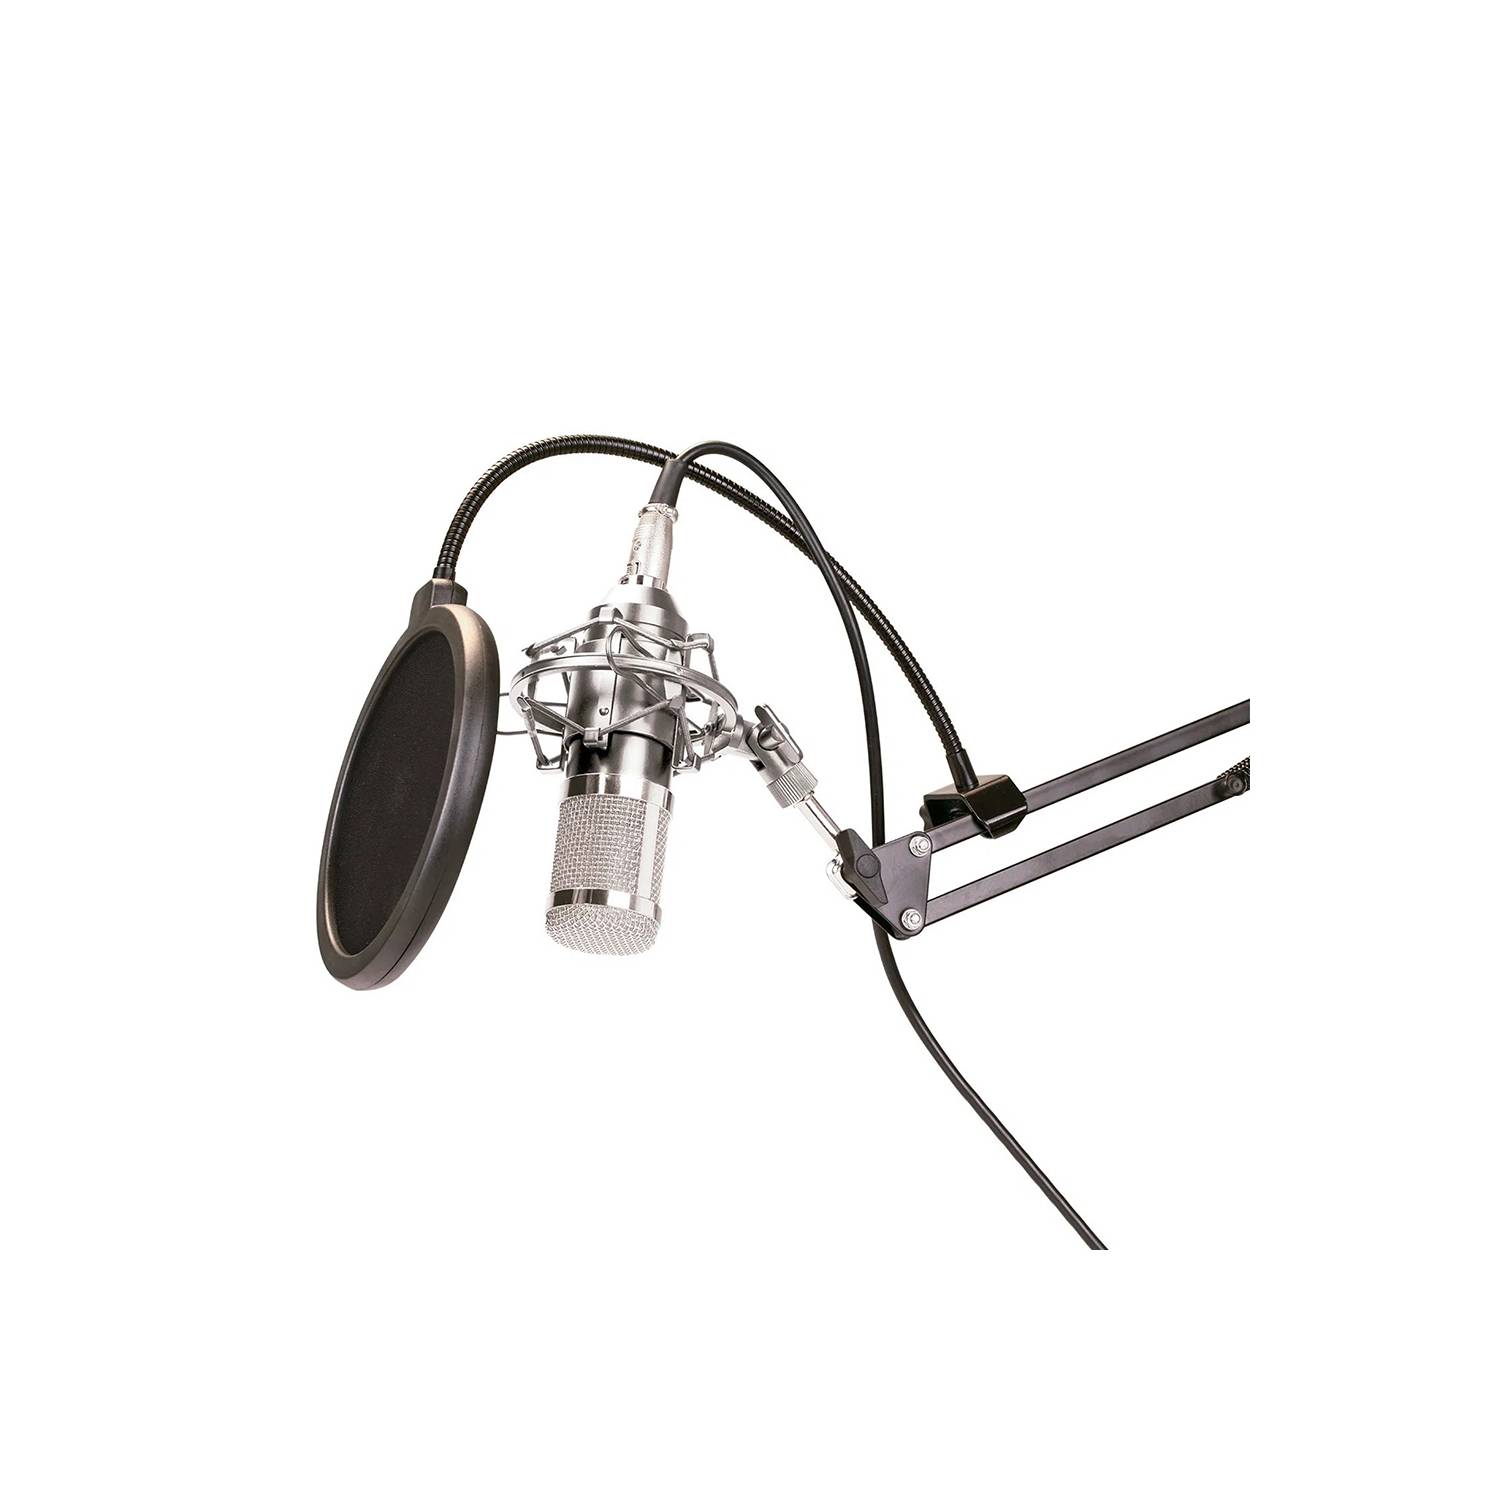 Kit Micrófono Condensador-Estudio Pro Fd-Bm800